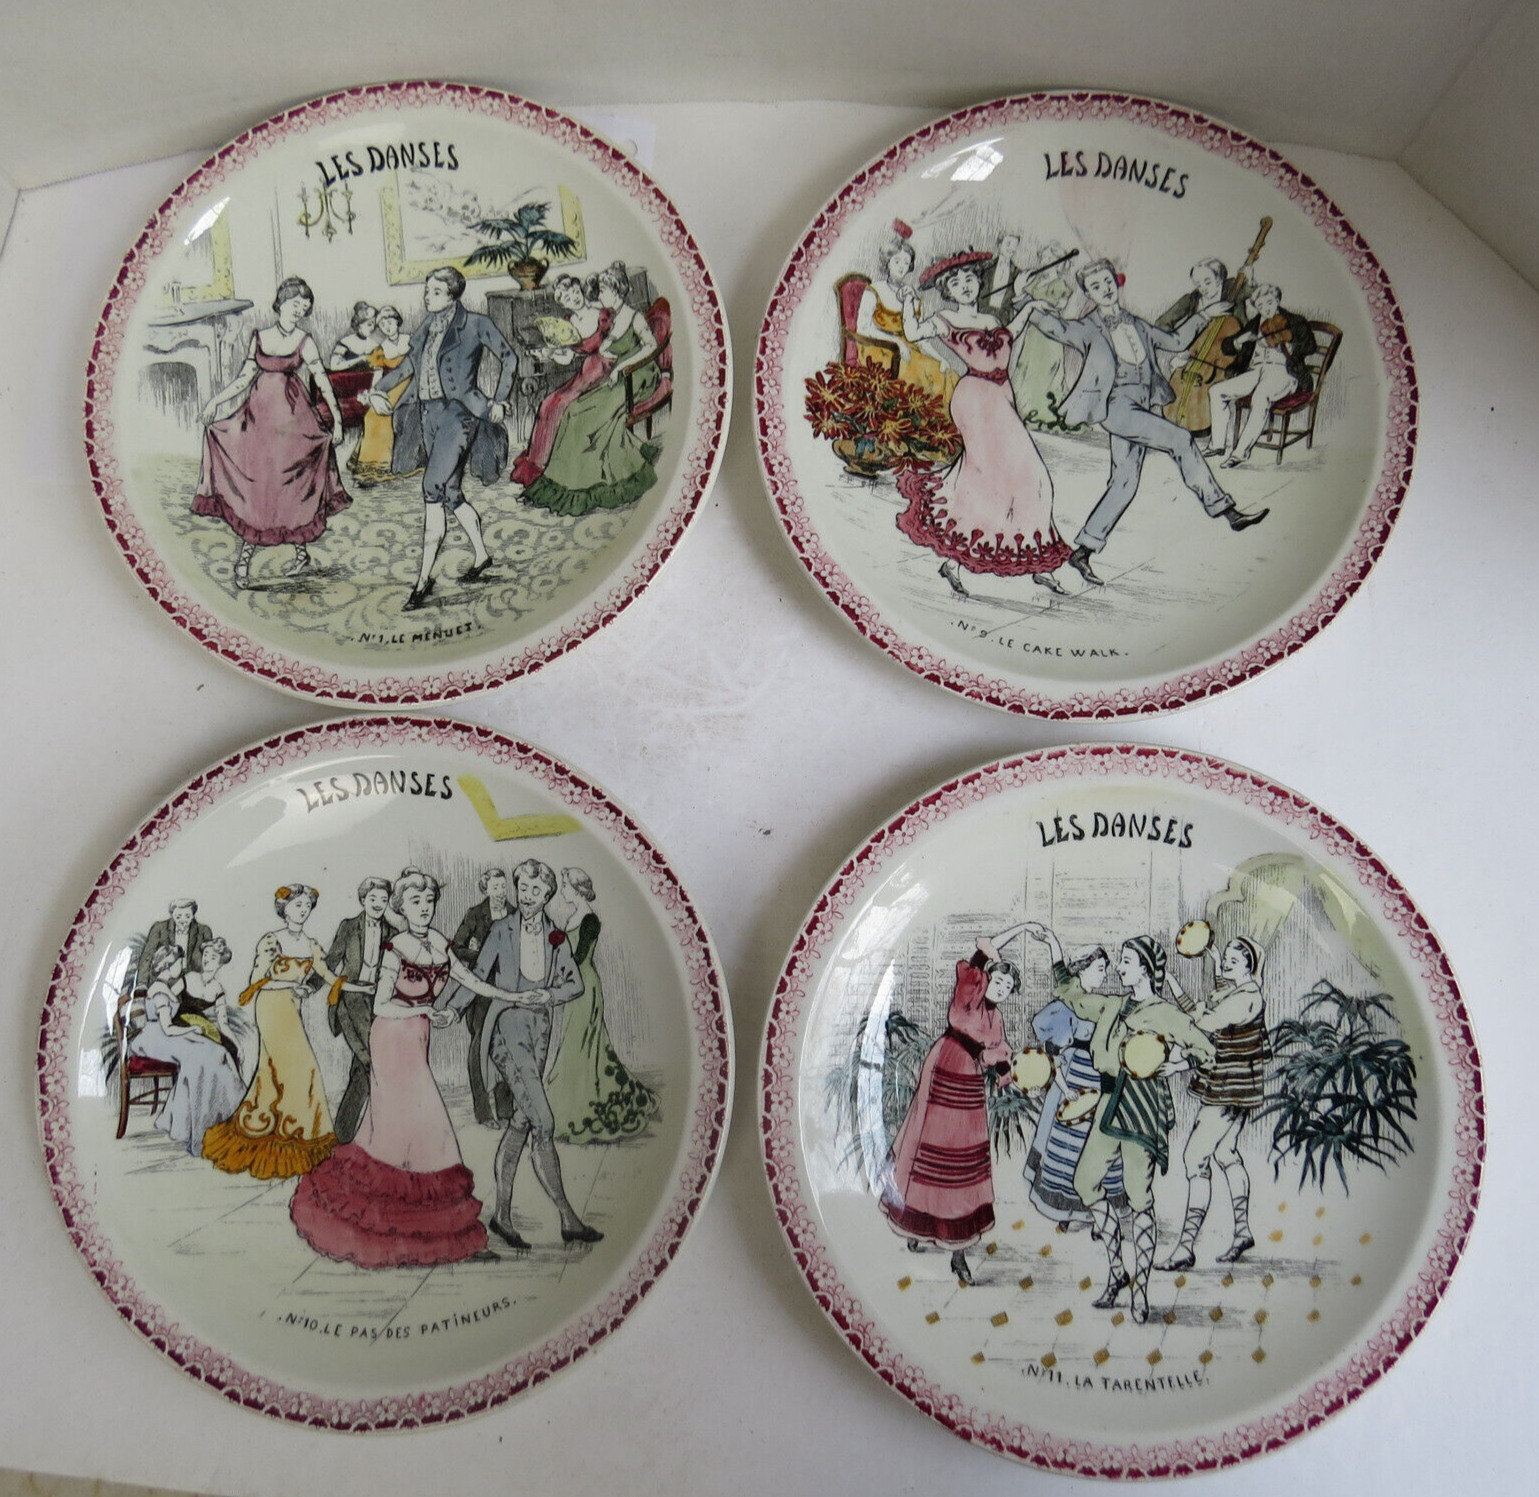 French Antique Ceramic Talking Plate Montereau Les Danses #1 #9 #10 #11 Patineur